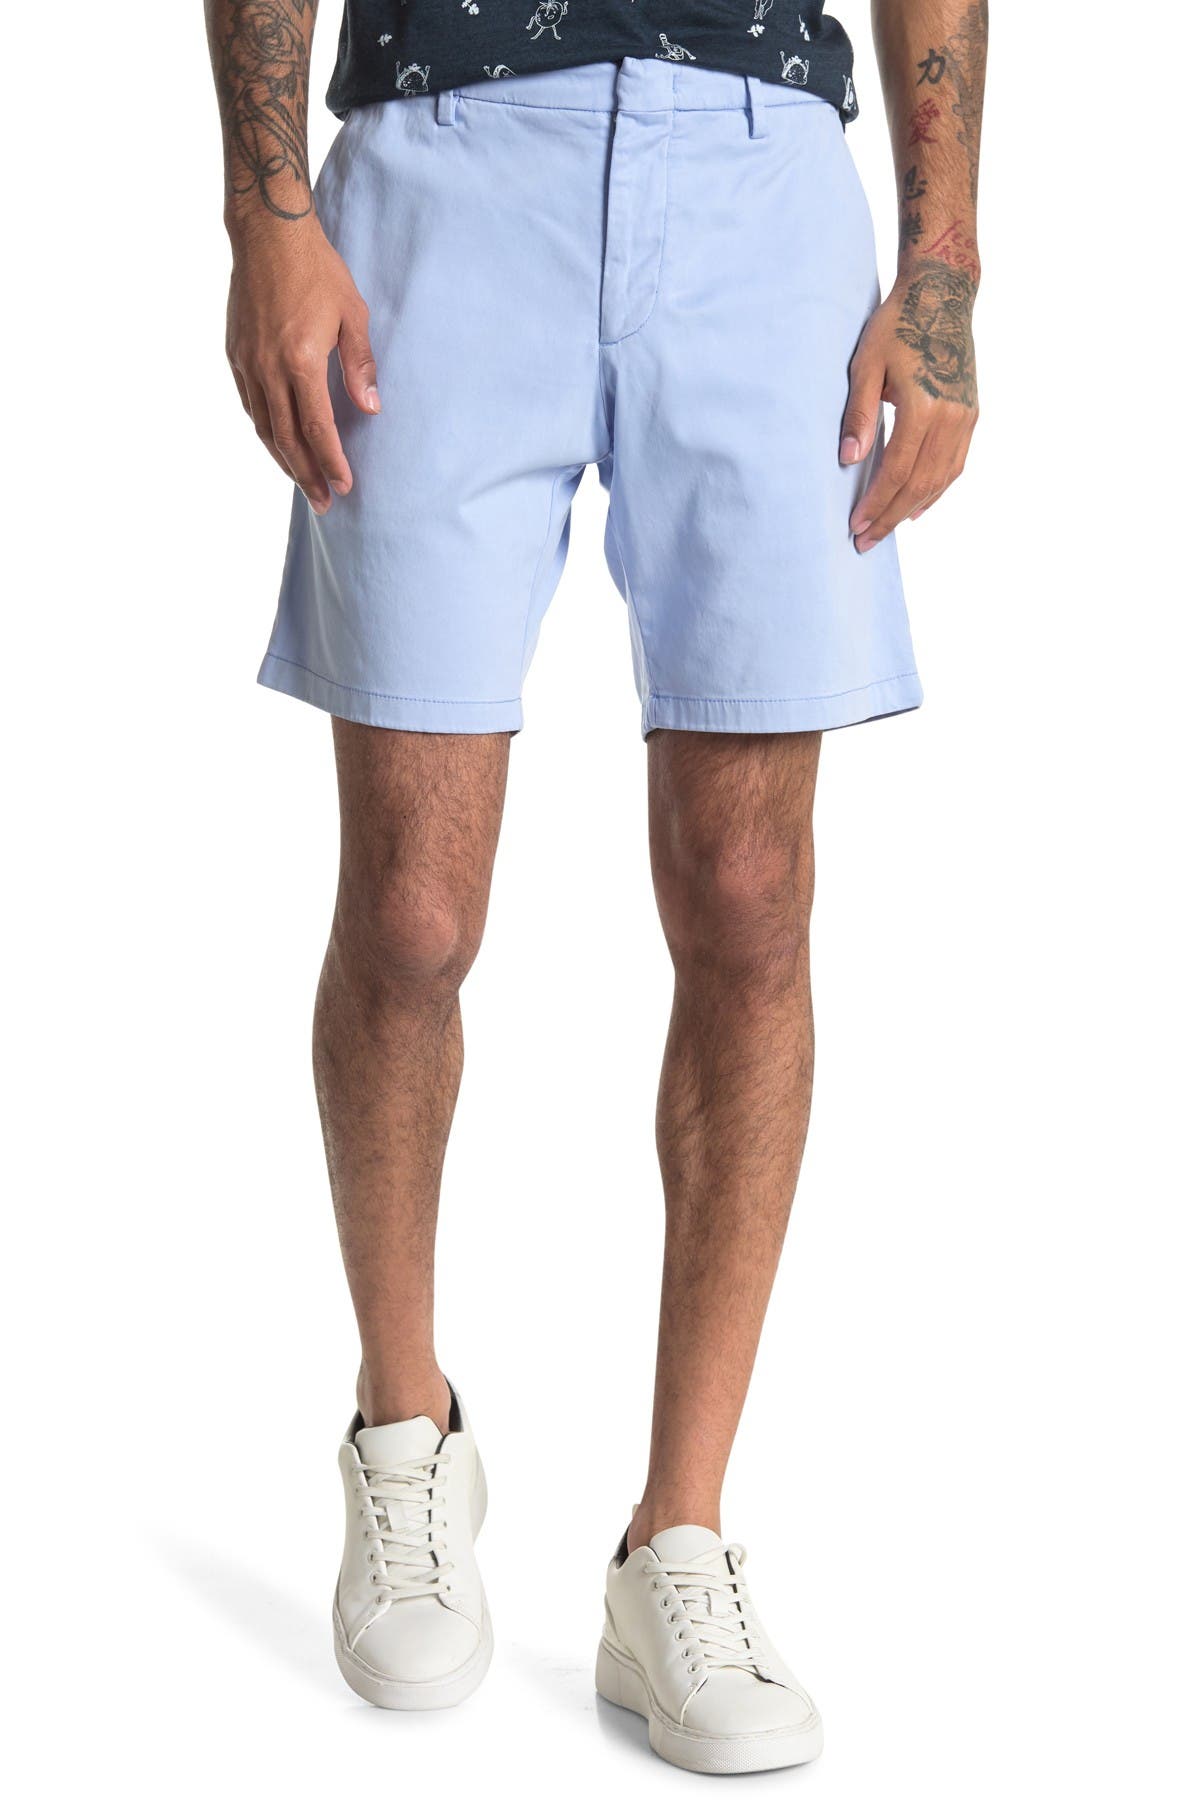 Zachary Prell Catalpa Chino Shorts In Light/pastel Blue2